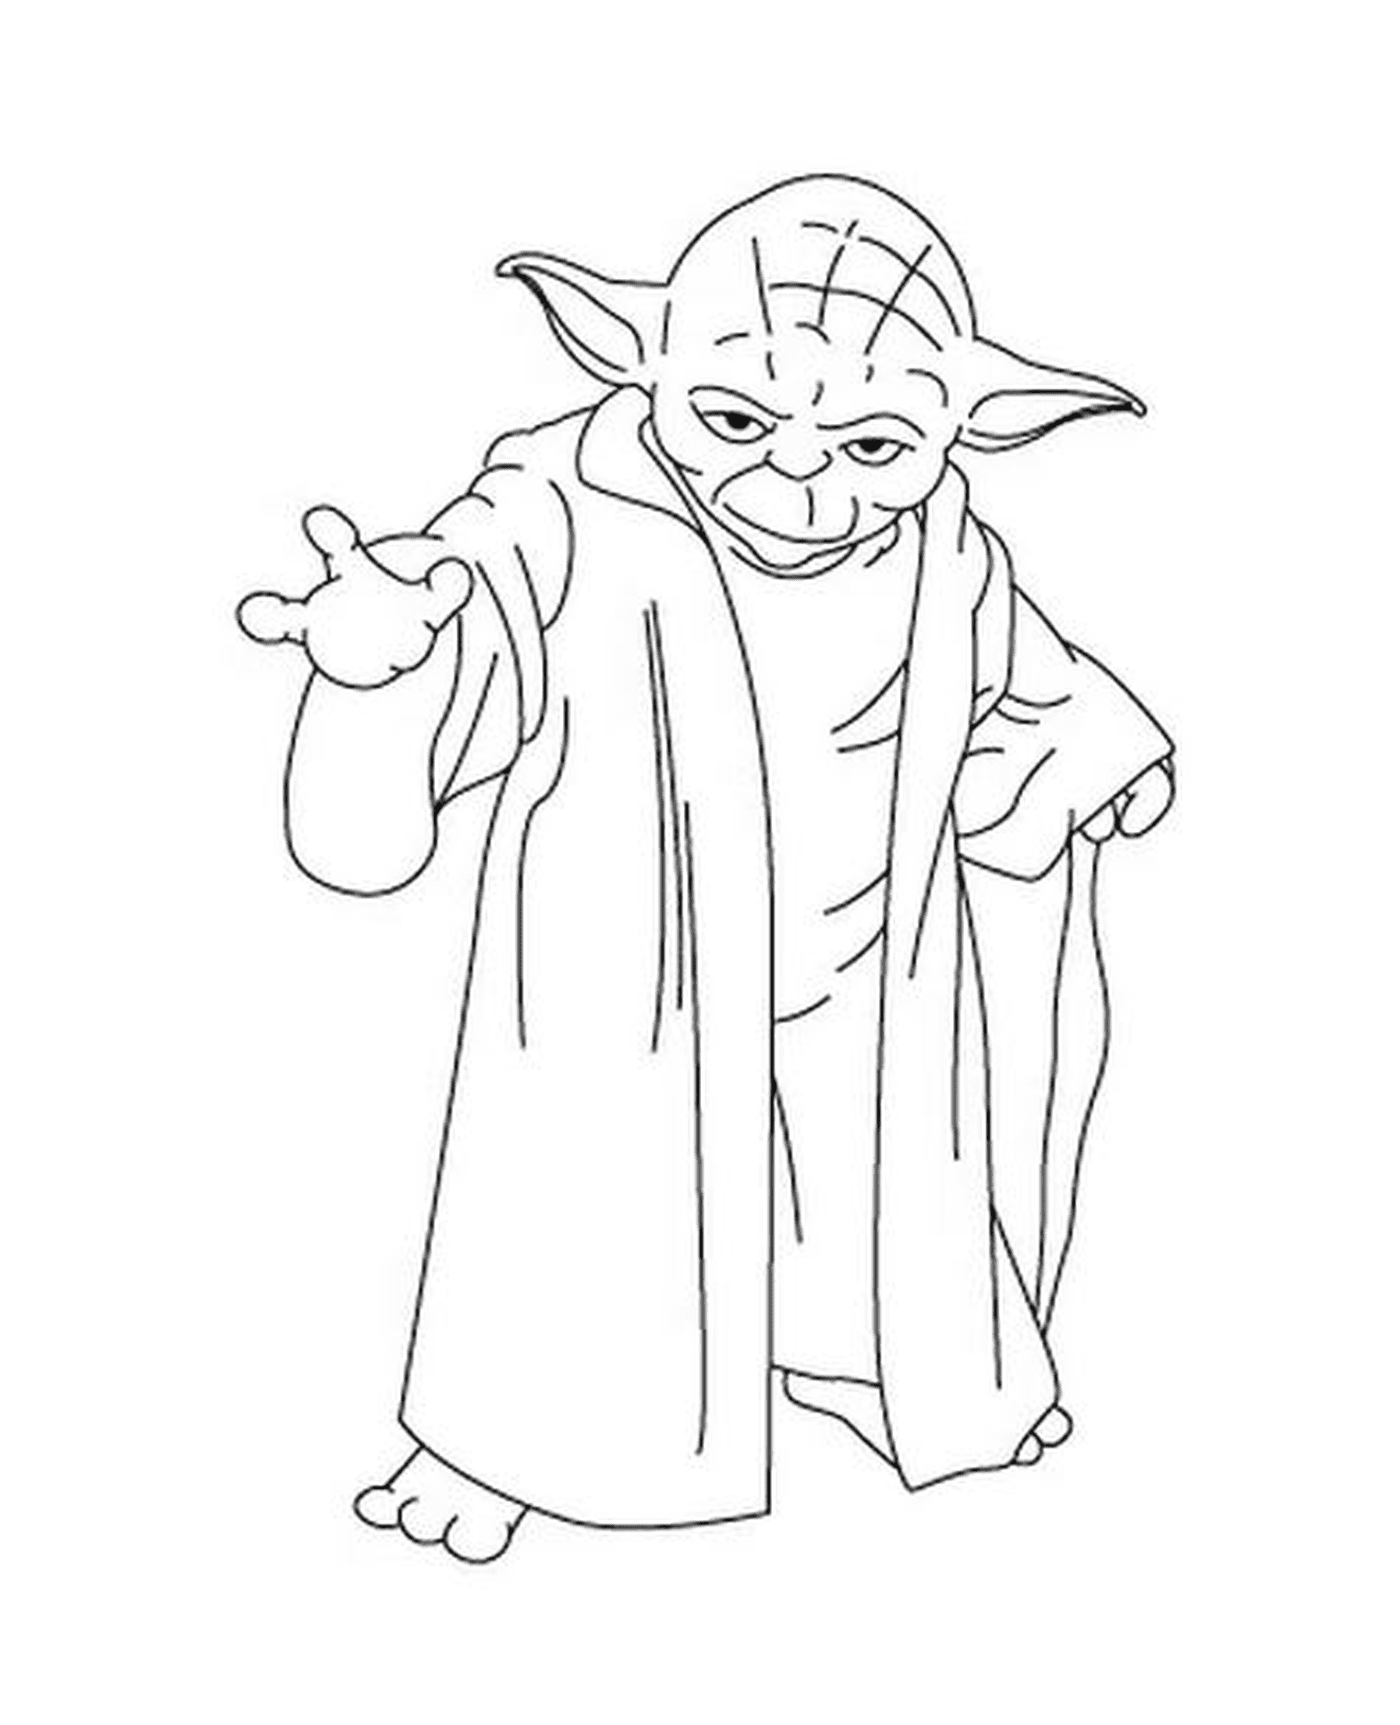  Yoda, legendary master 